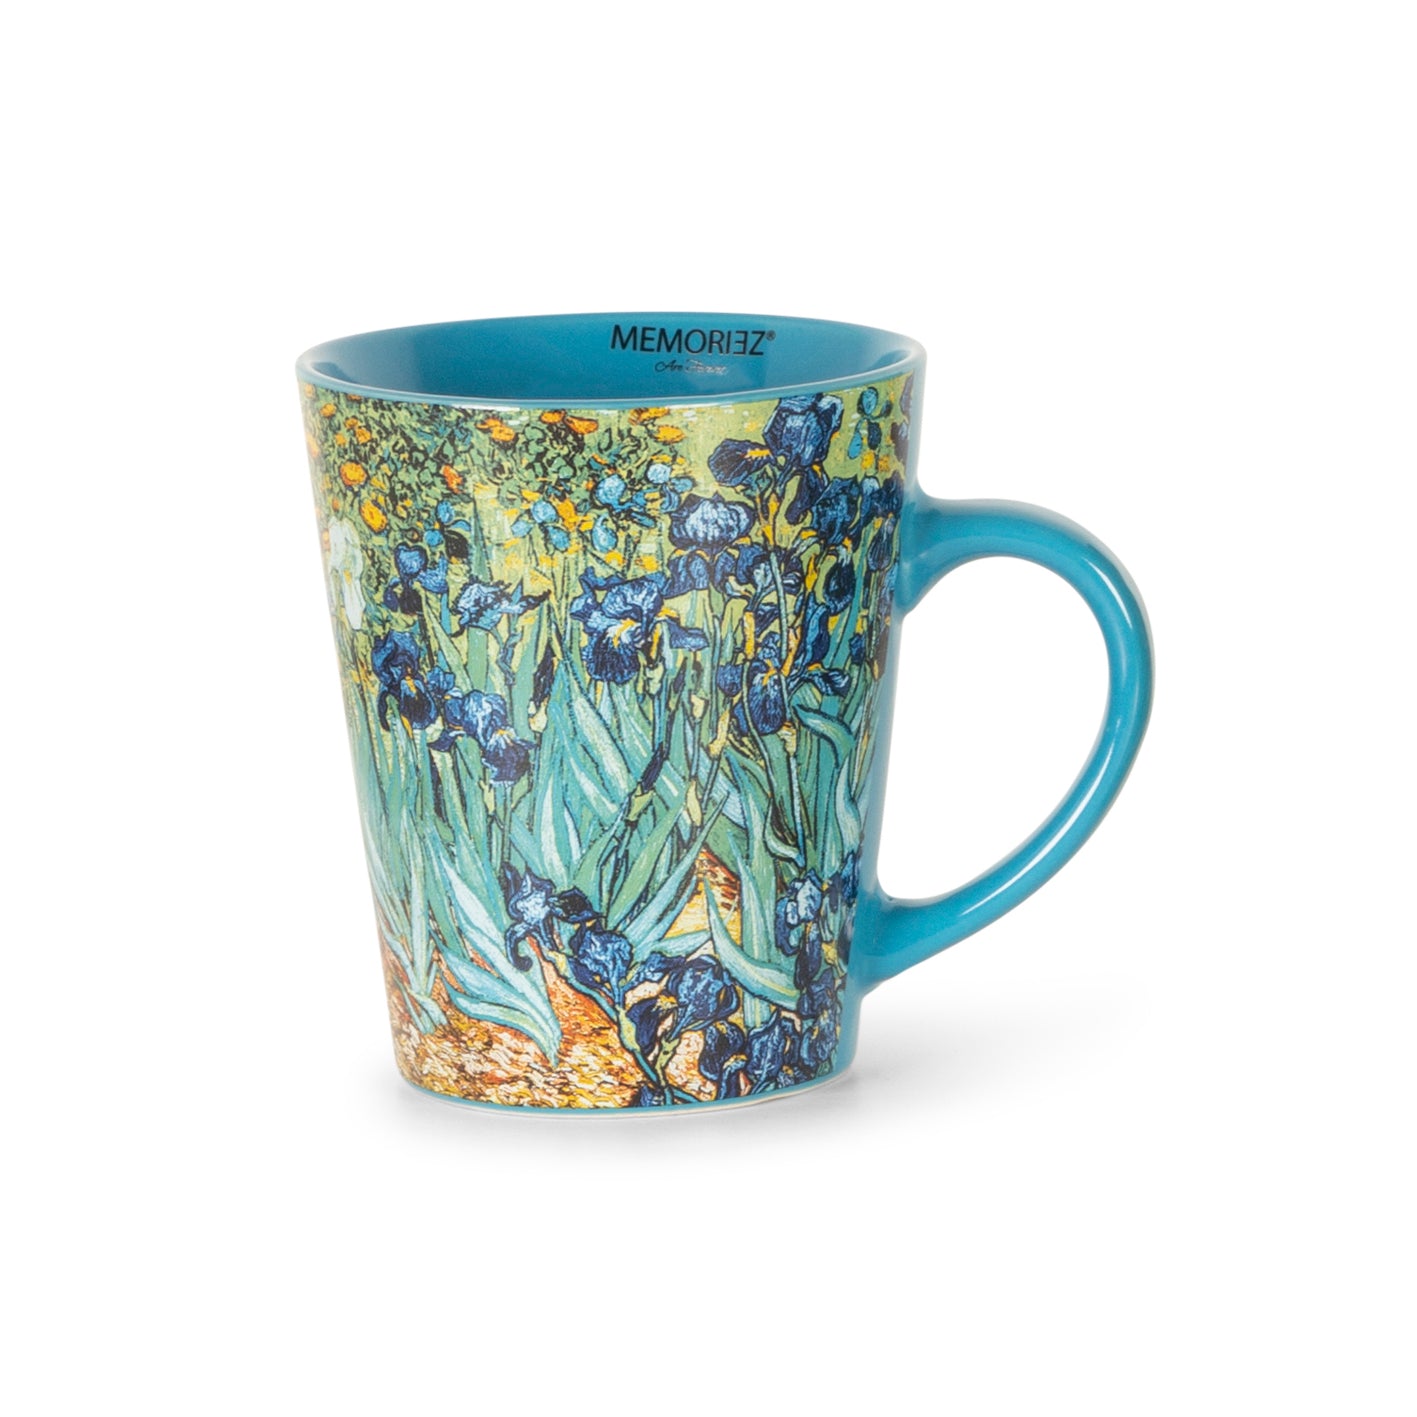 V-shape mug - Irises - van Gogh